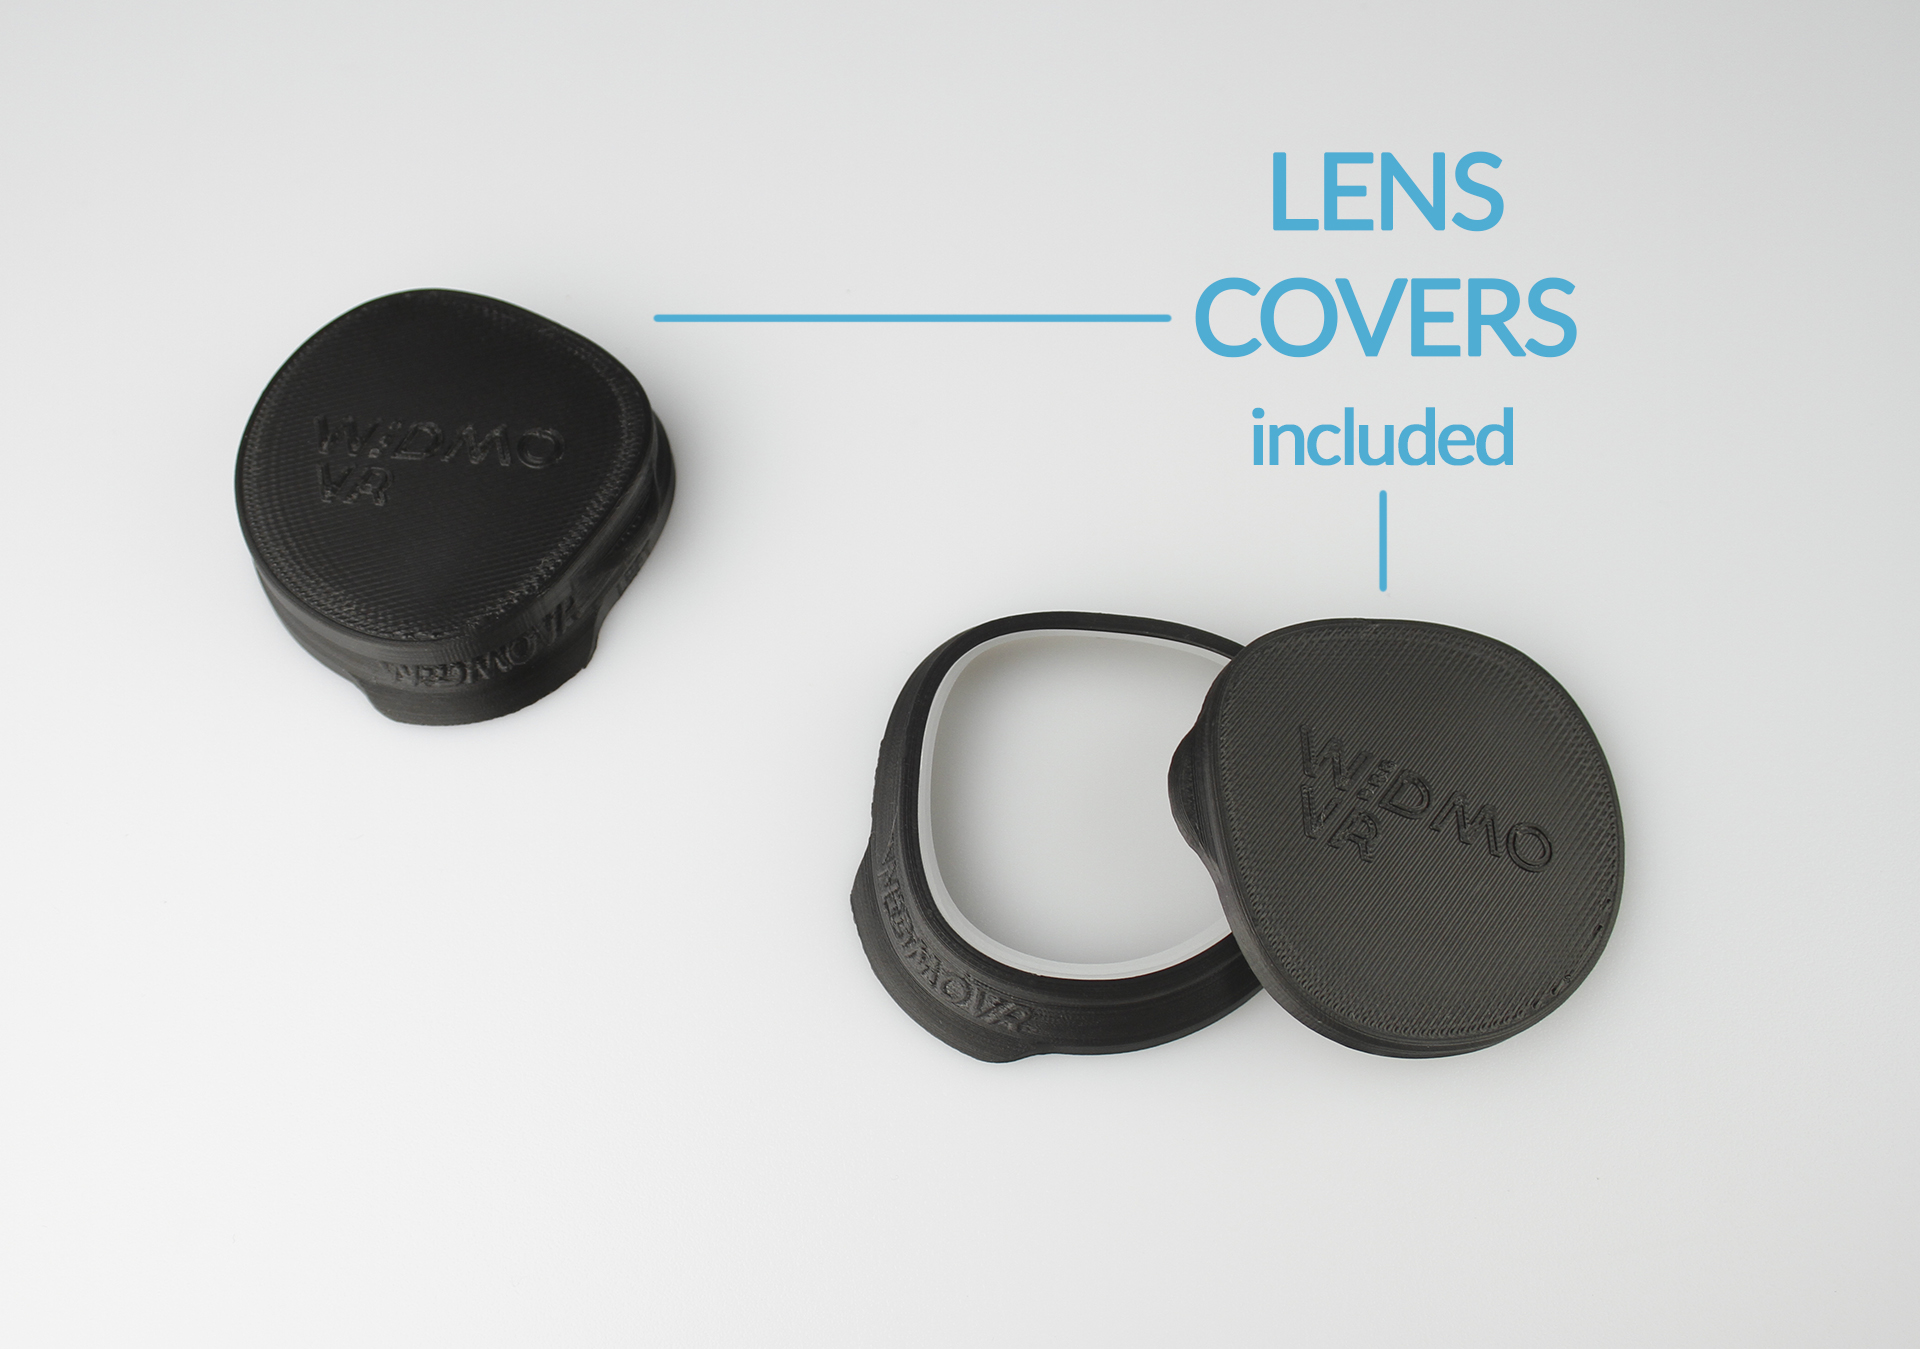 oculus quest lens adapter